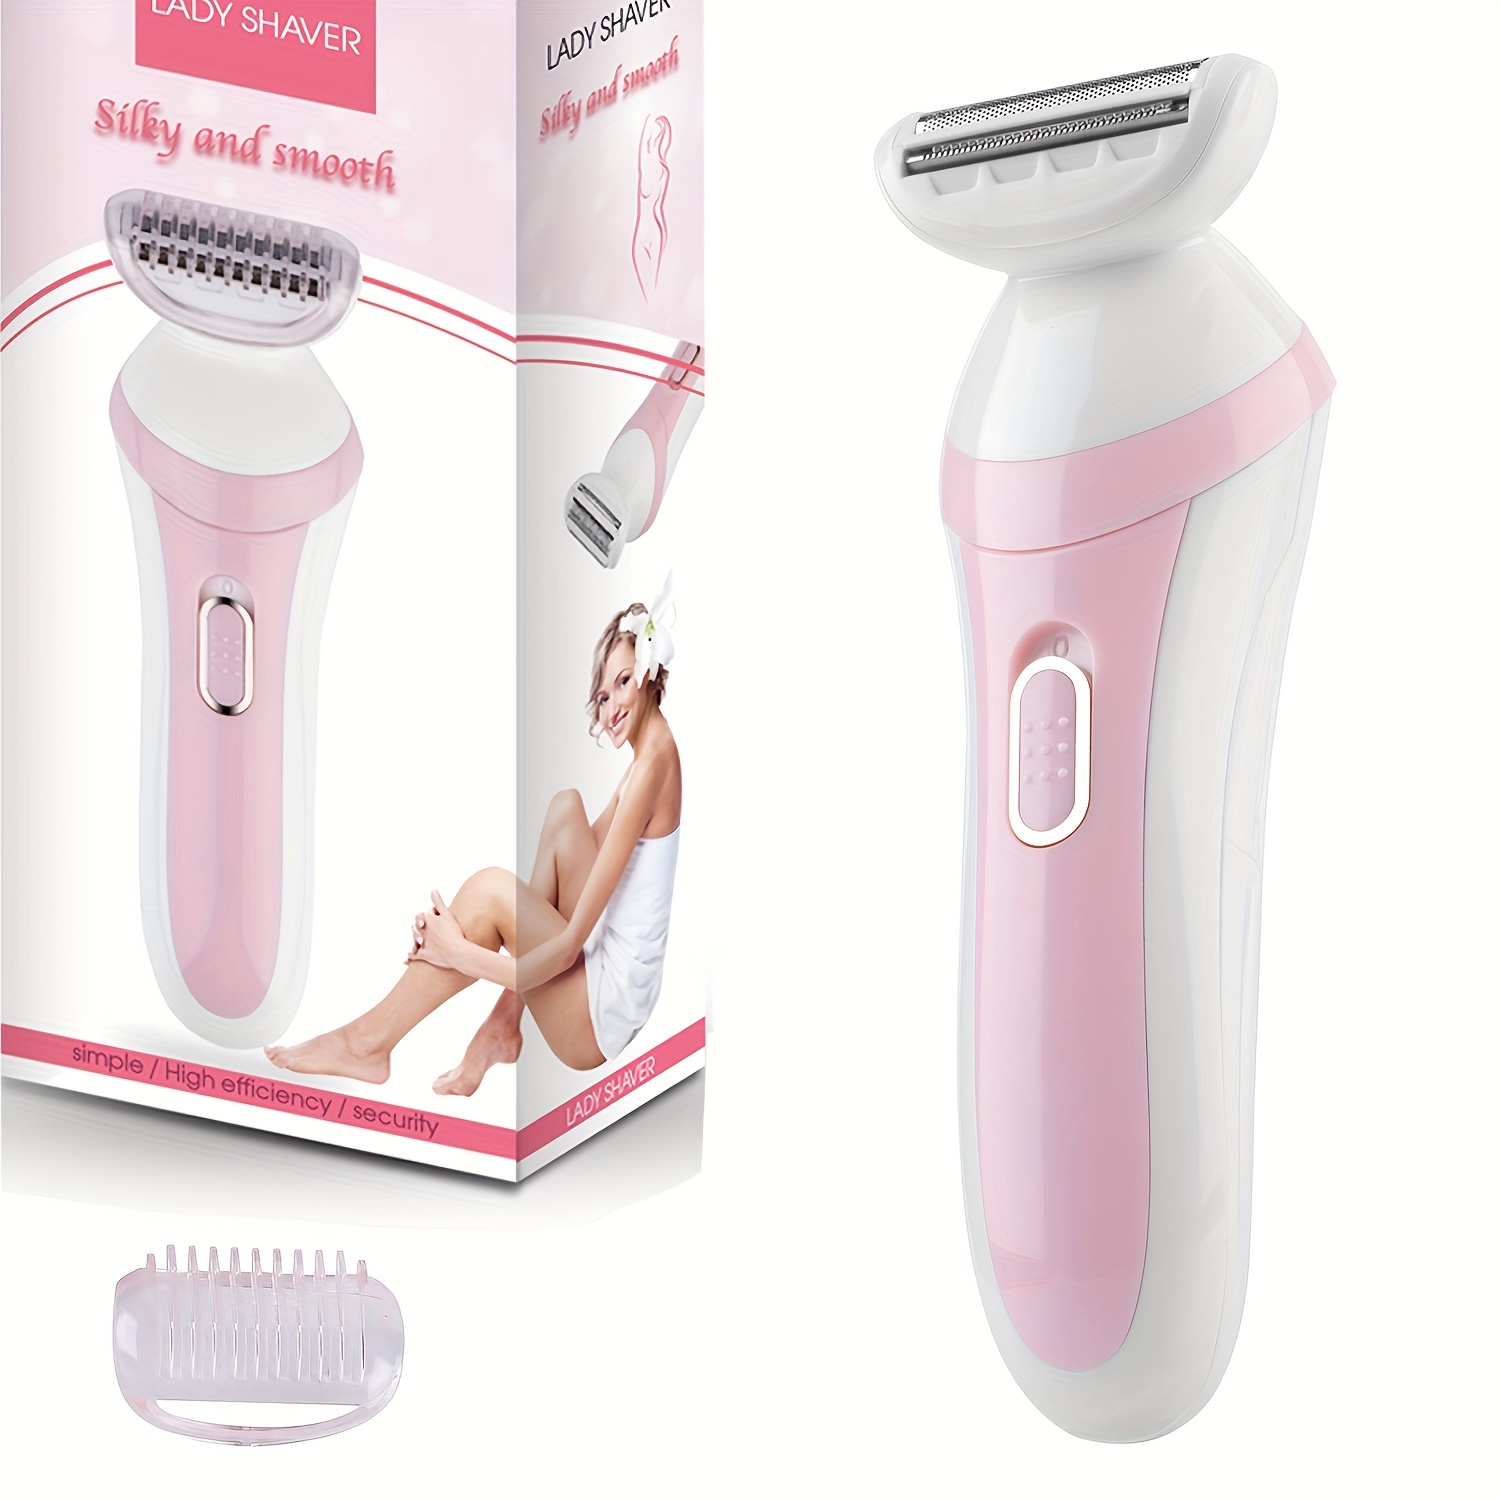 Maquinilla de afeitar eléctrica para mujer, afeitadora para mujer, para  brazos, piernas, axilas y zona de bikinii, IPX6 de uso húmedo y seco, 1